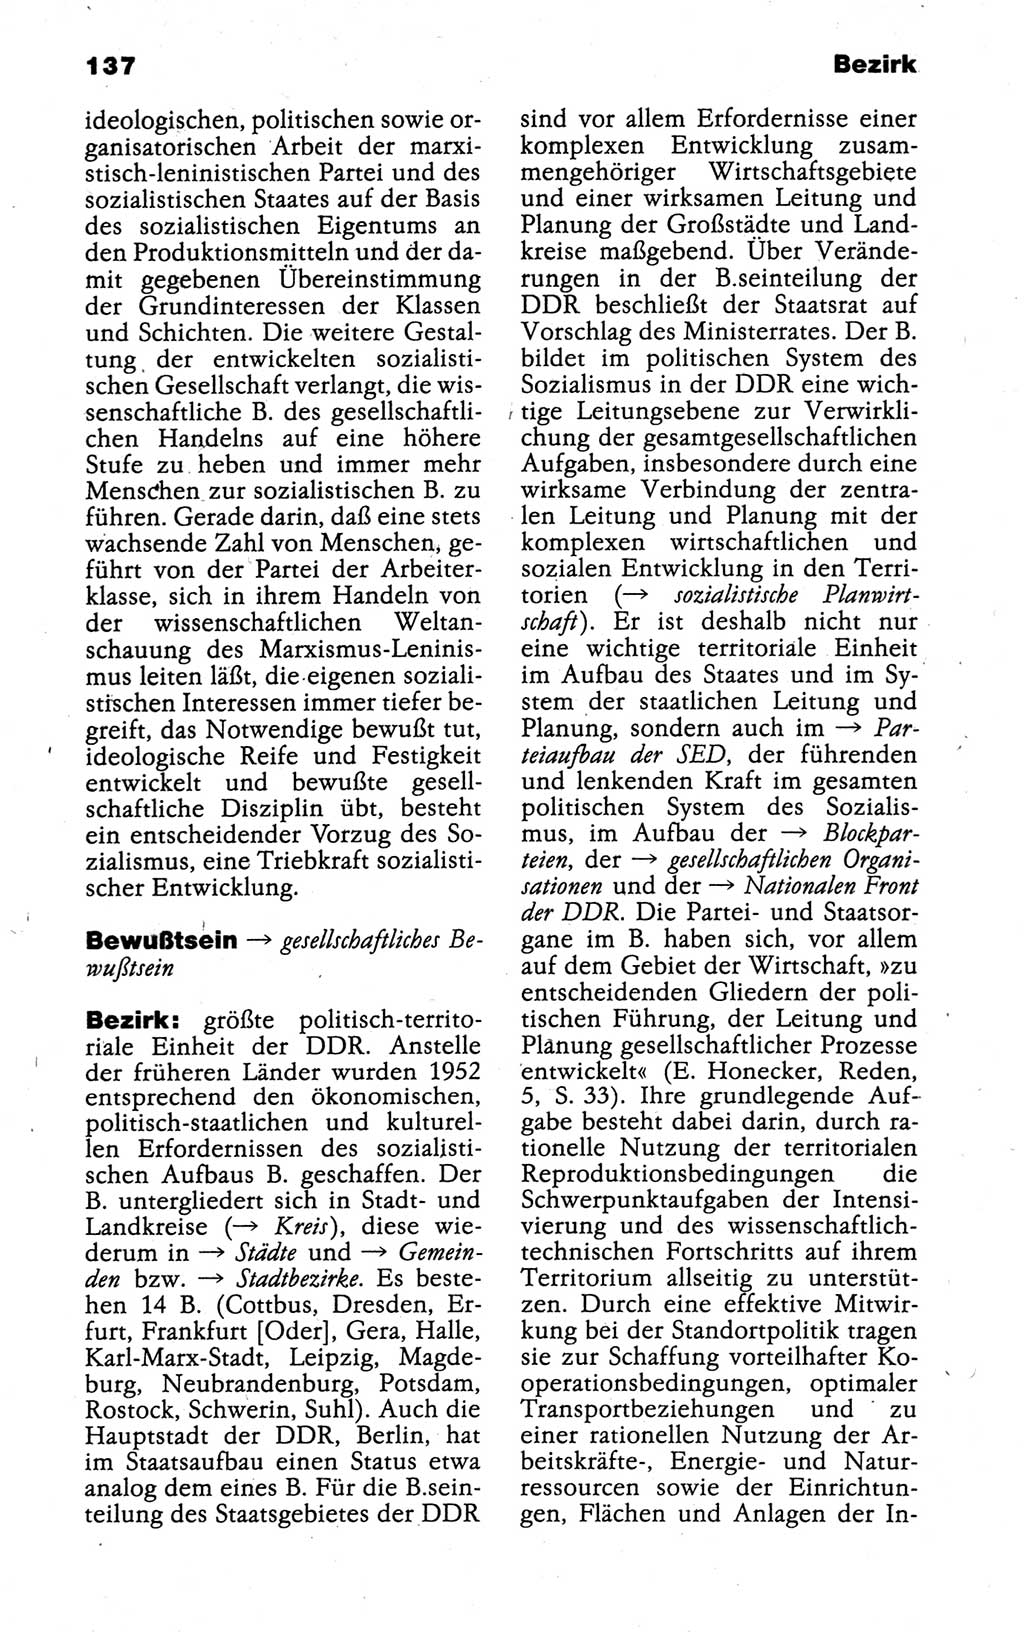 Kleines politisches Wörterbuch [Deutsche Demokratische Republik (DDR)] 1988, Seite 137 (Kl. pol. Wb. DDR 1988, S. 137)